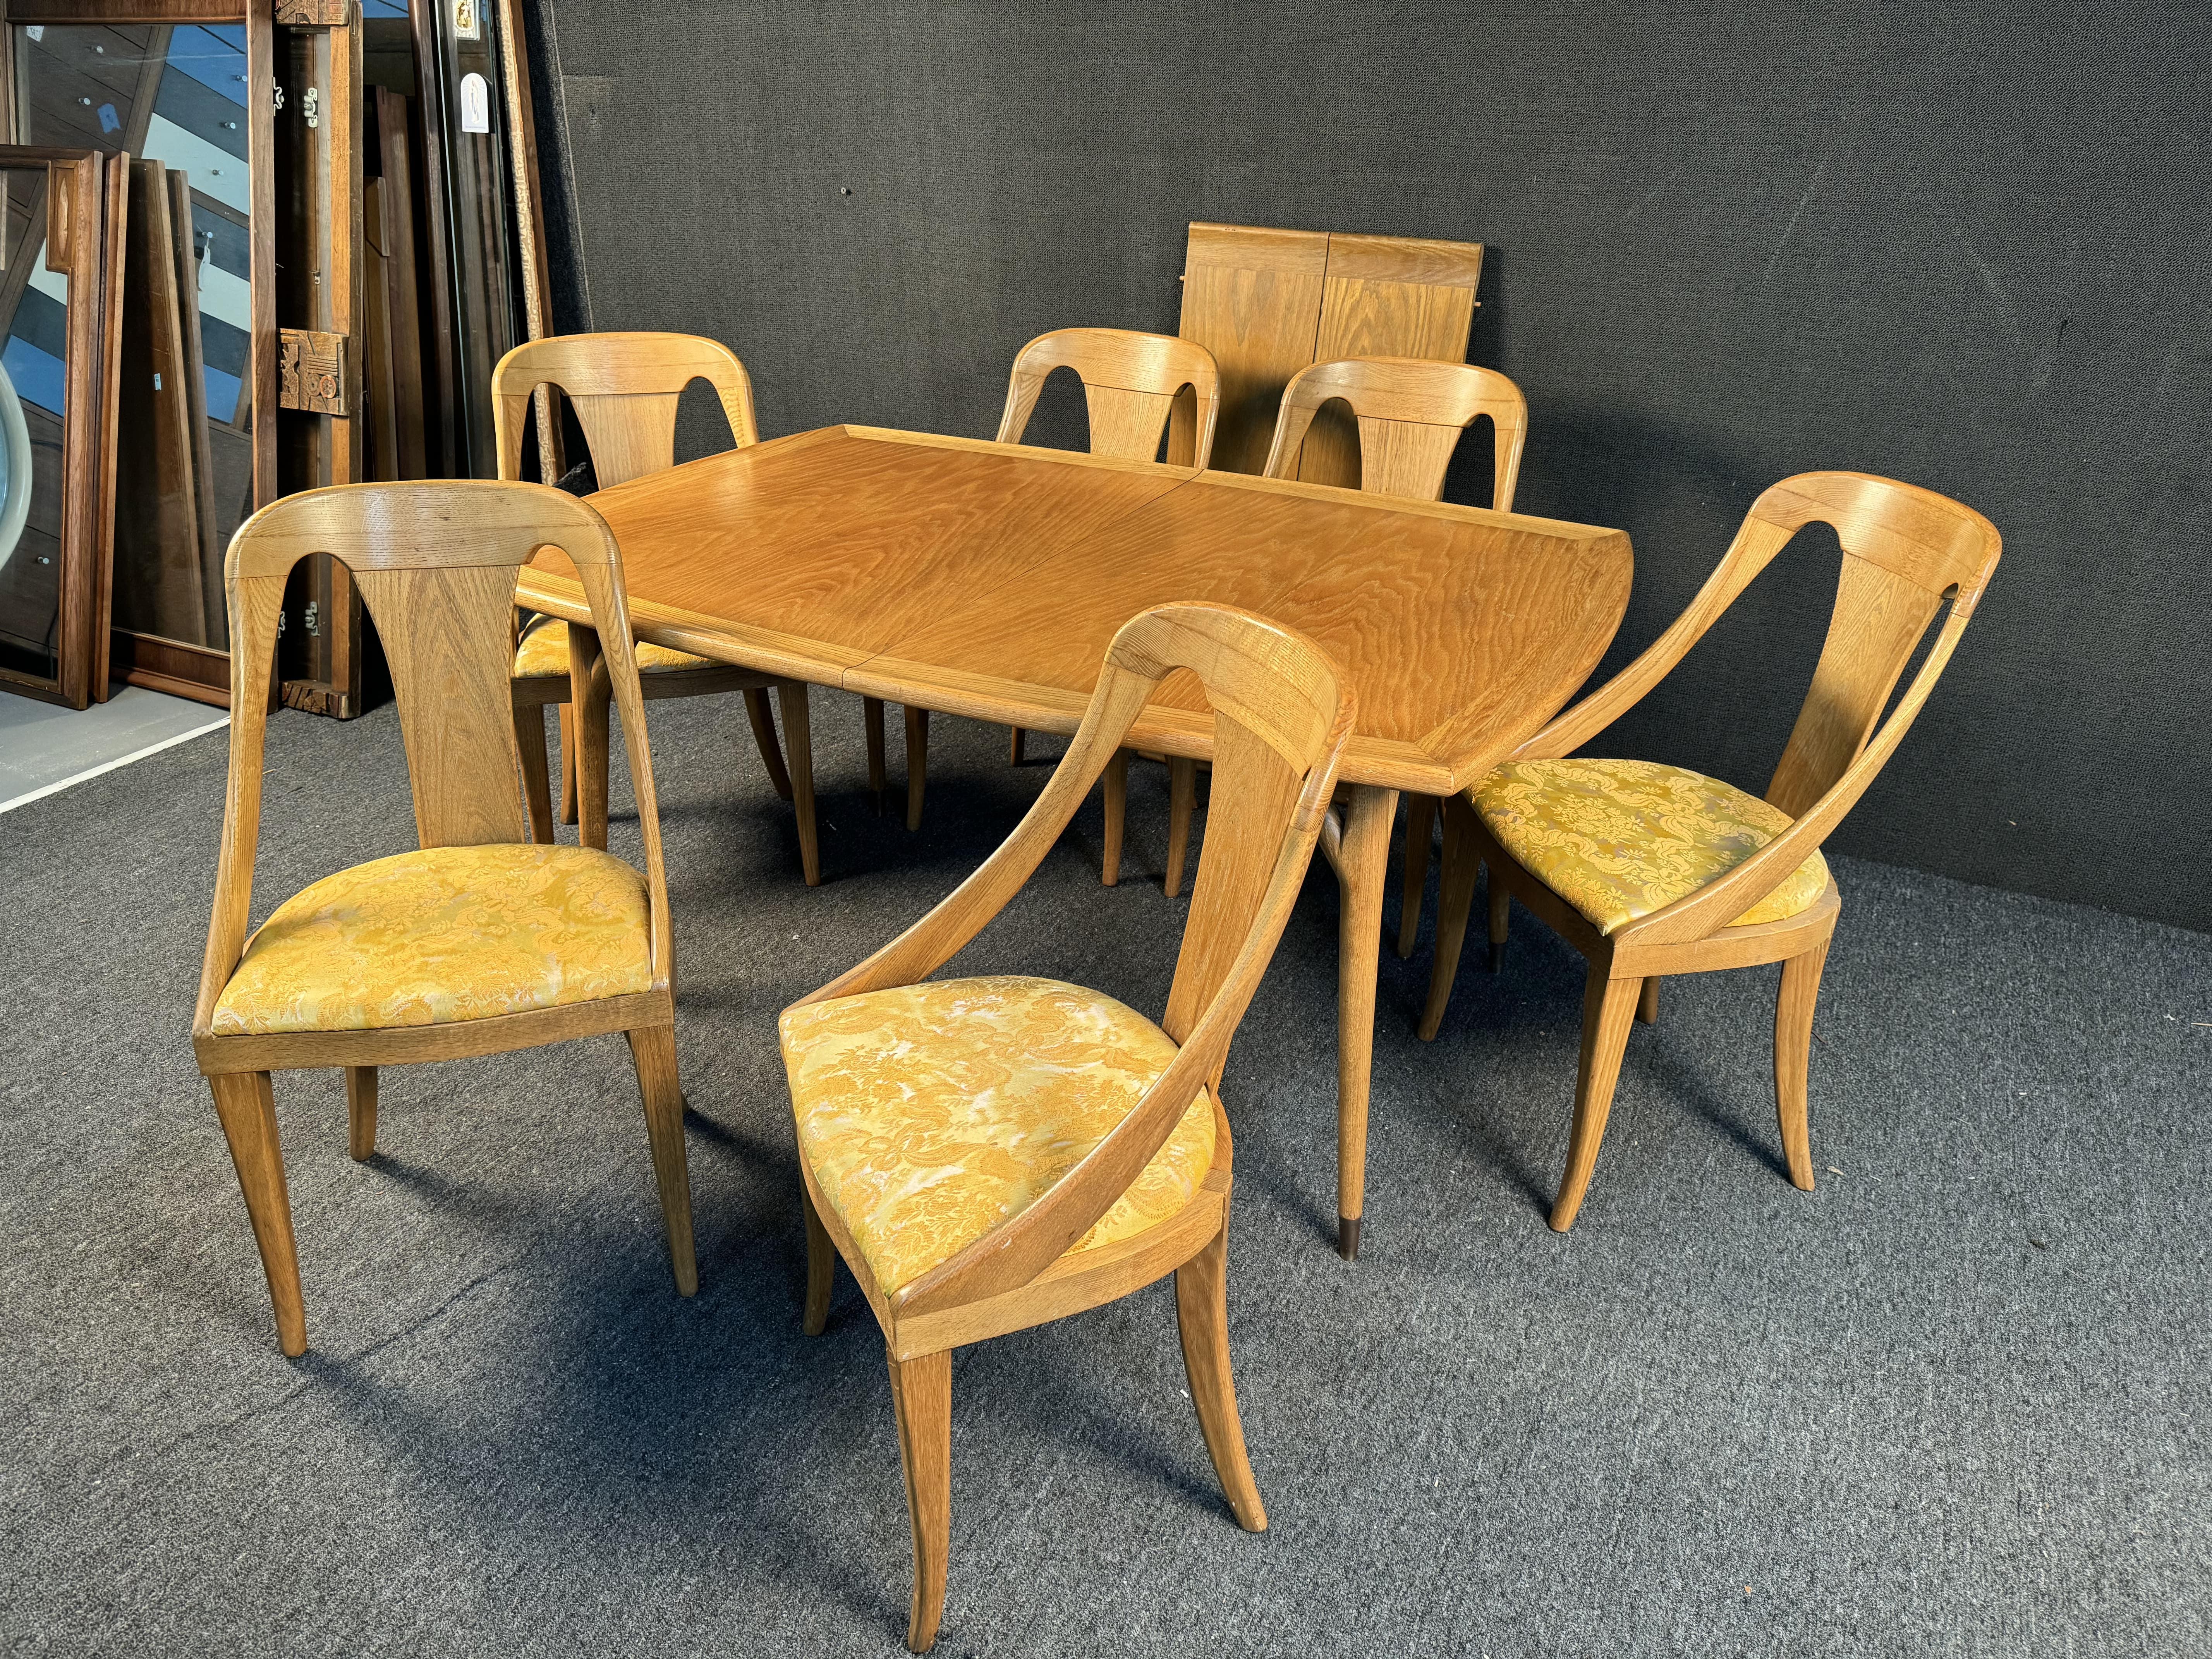 Atemberaubende Mid Century Eiche Blatt Tisch Esstisch Set von Jack Van Der Molen. Beinhaltet einen schönen Esstisch aus Eichenholz mit 2 Flügeln und sechs Stühle mit einer Polsterung in Satiny Gold Muster. Bitte bestätigen Sie den Standort beim